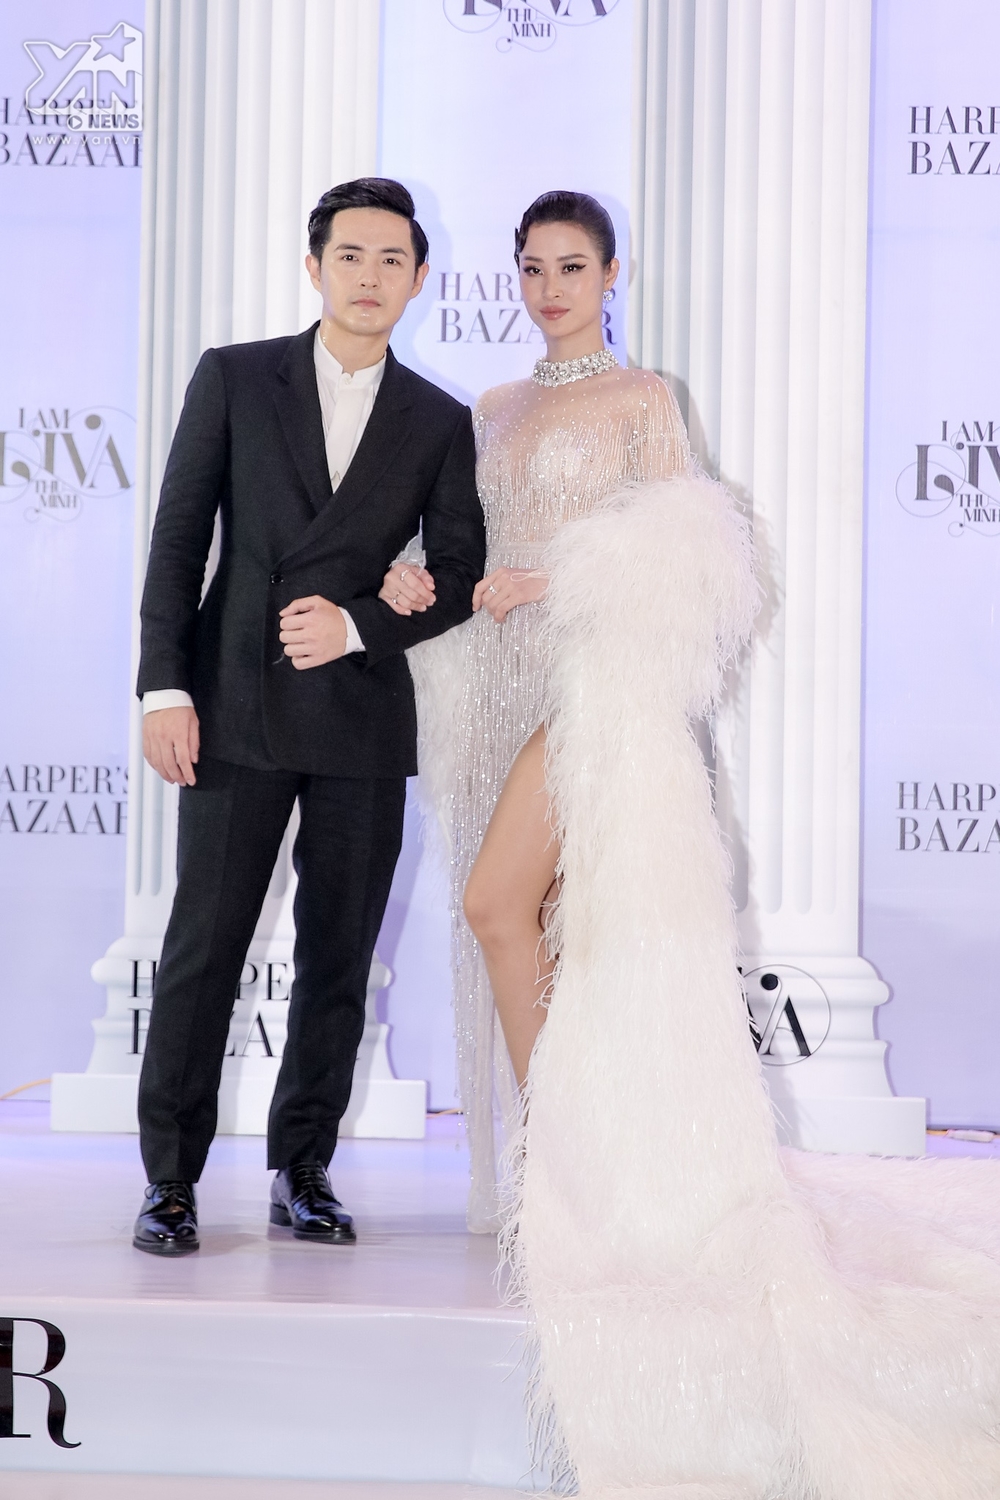  
Cặp đôi hot nhất showbiz Việt Đông Nhi - Ông Cao Thắng. Cả hai gây chú ý ngay khi vừa xuất hiện trên thảm đỏ vì độ tình tứ cũng như cách lựa chọn trang phục của mình. 